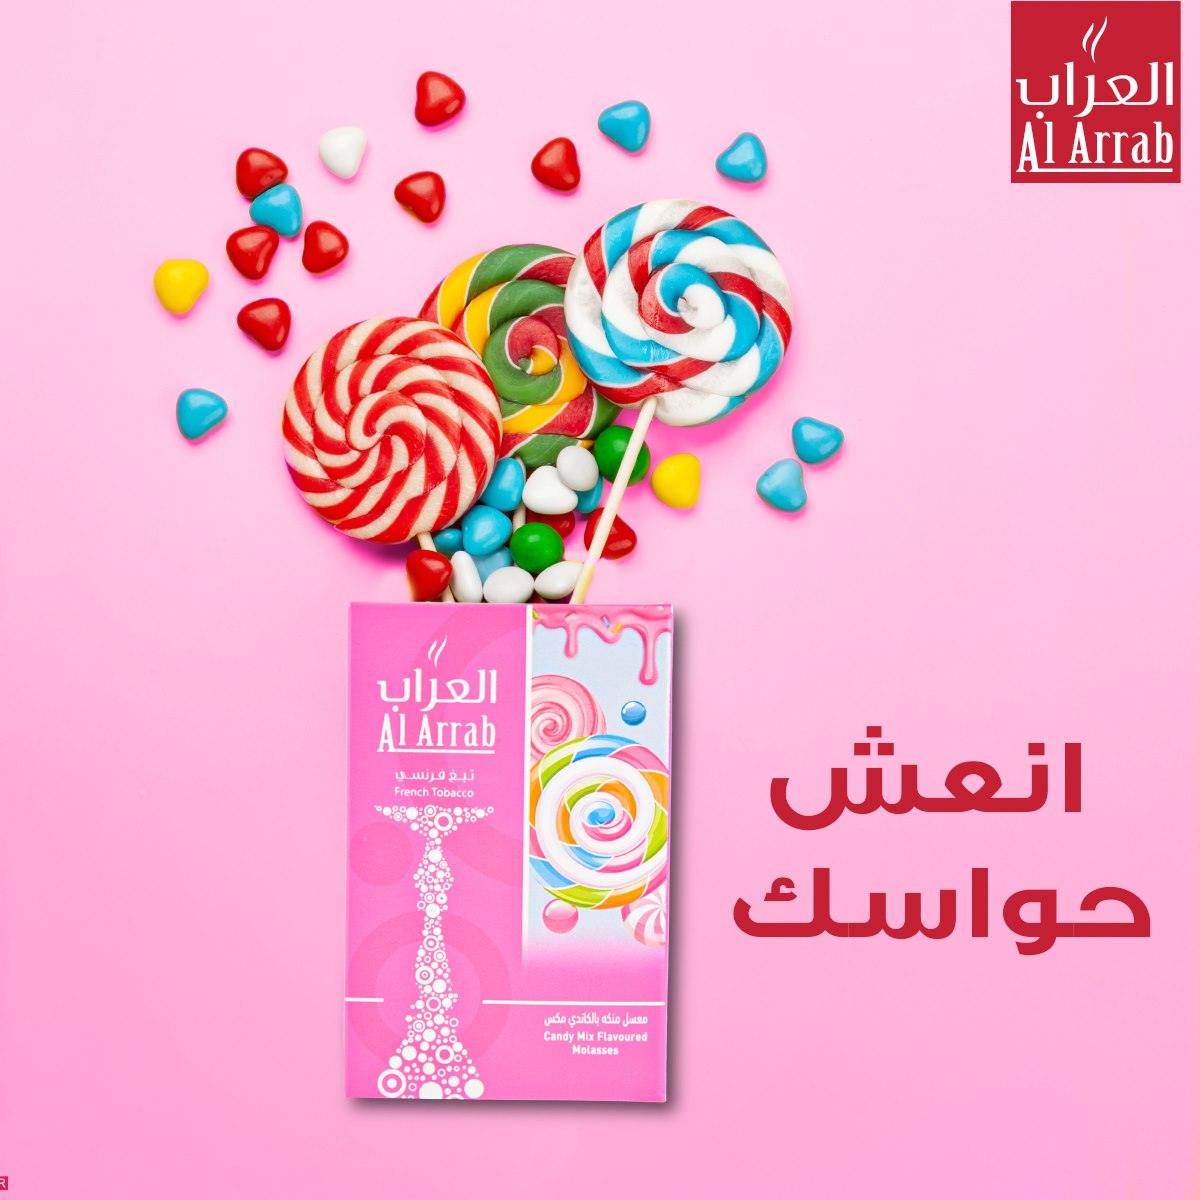 Al Arrab Molasses Candy  - معسّل العراب كاندي - Shishabox